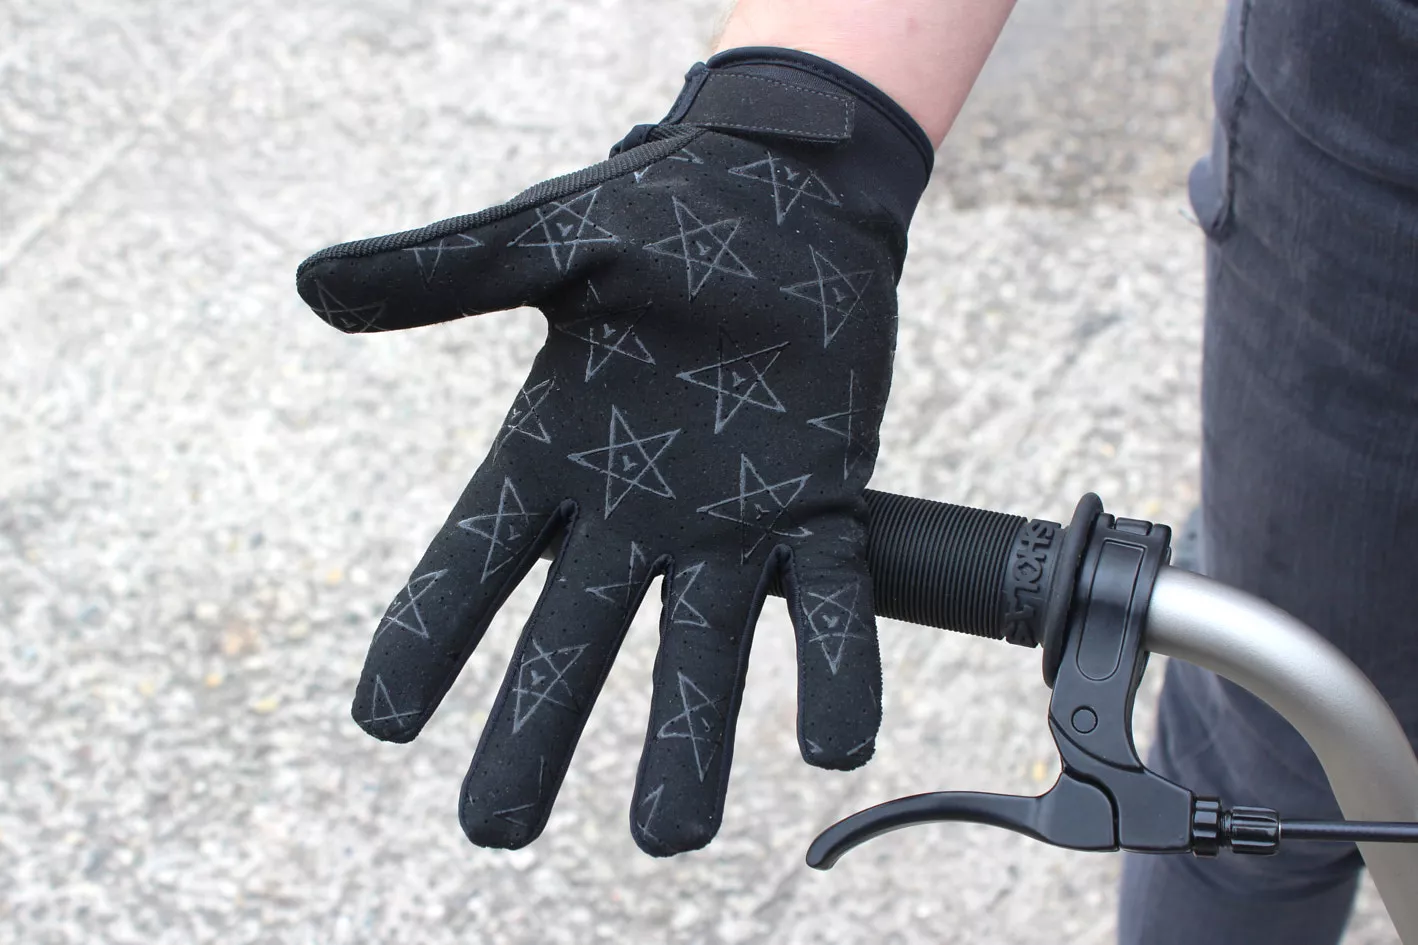 BMX Gloves KHE 4130 L